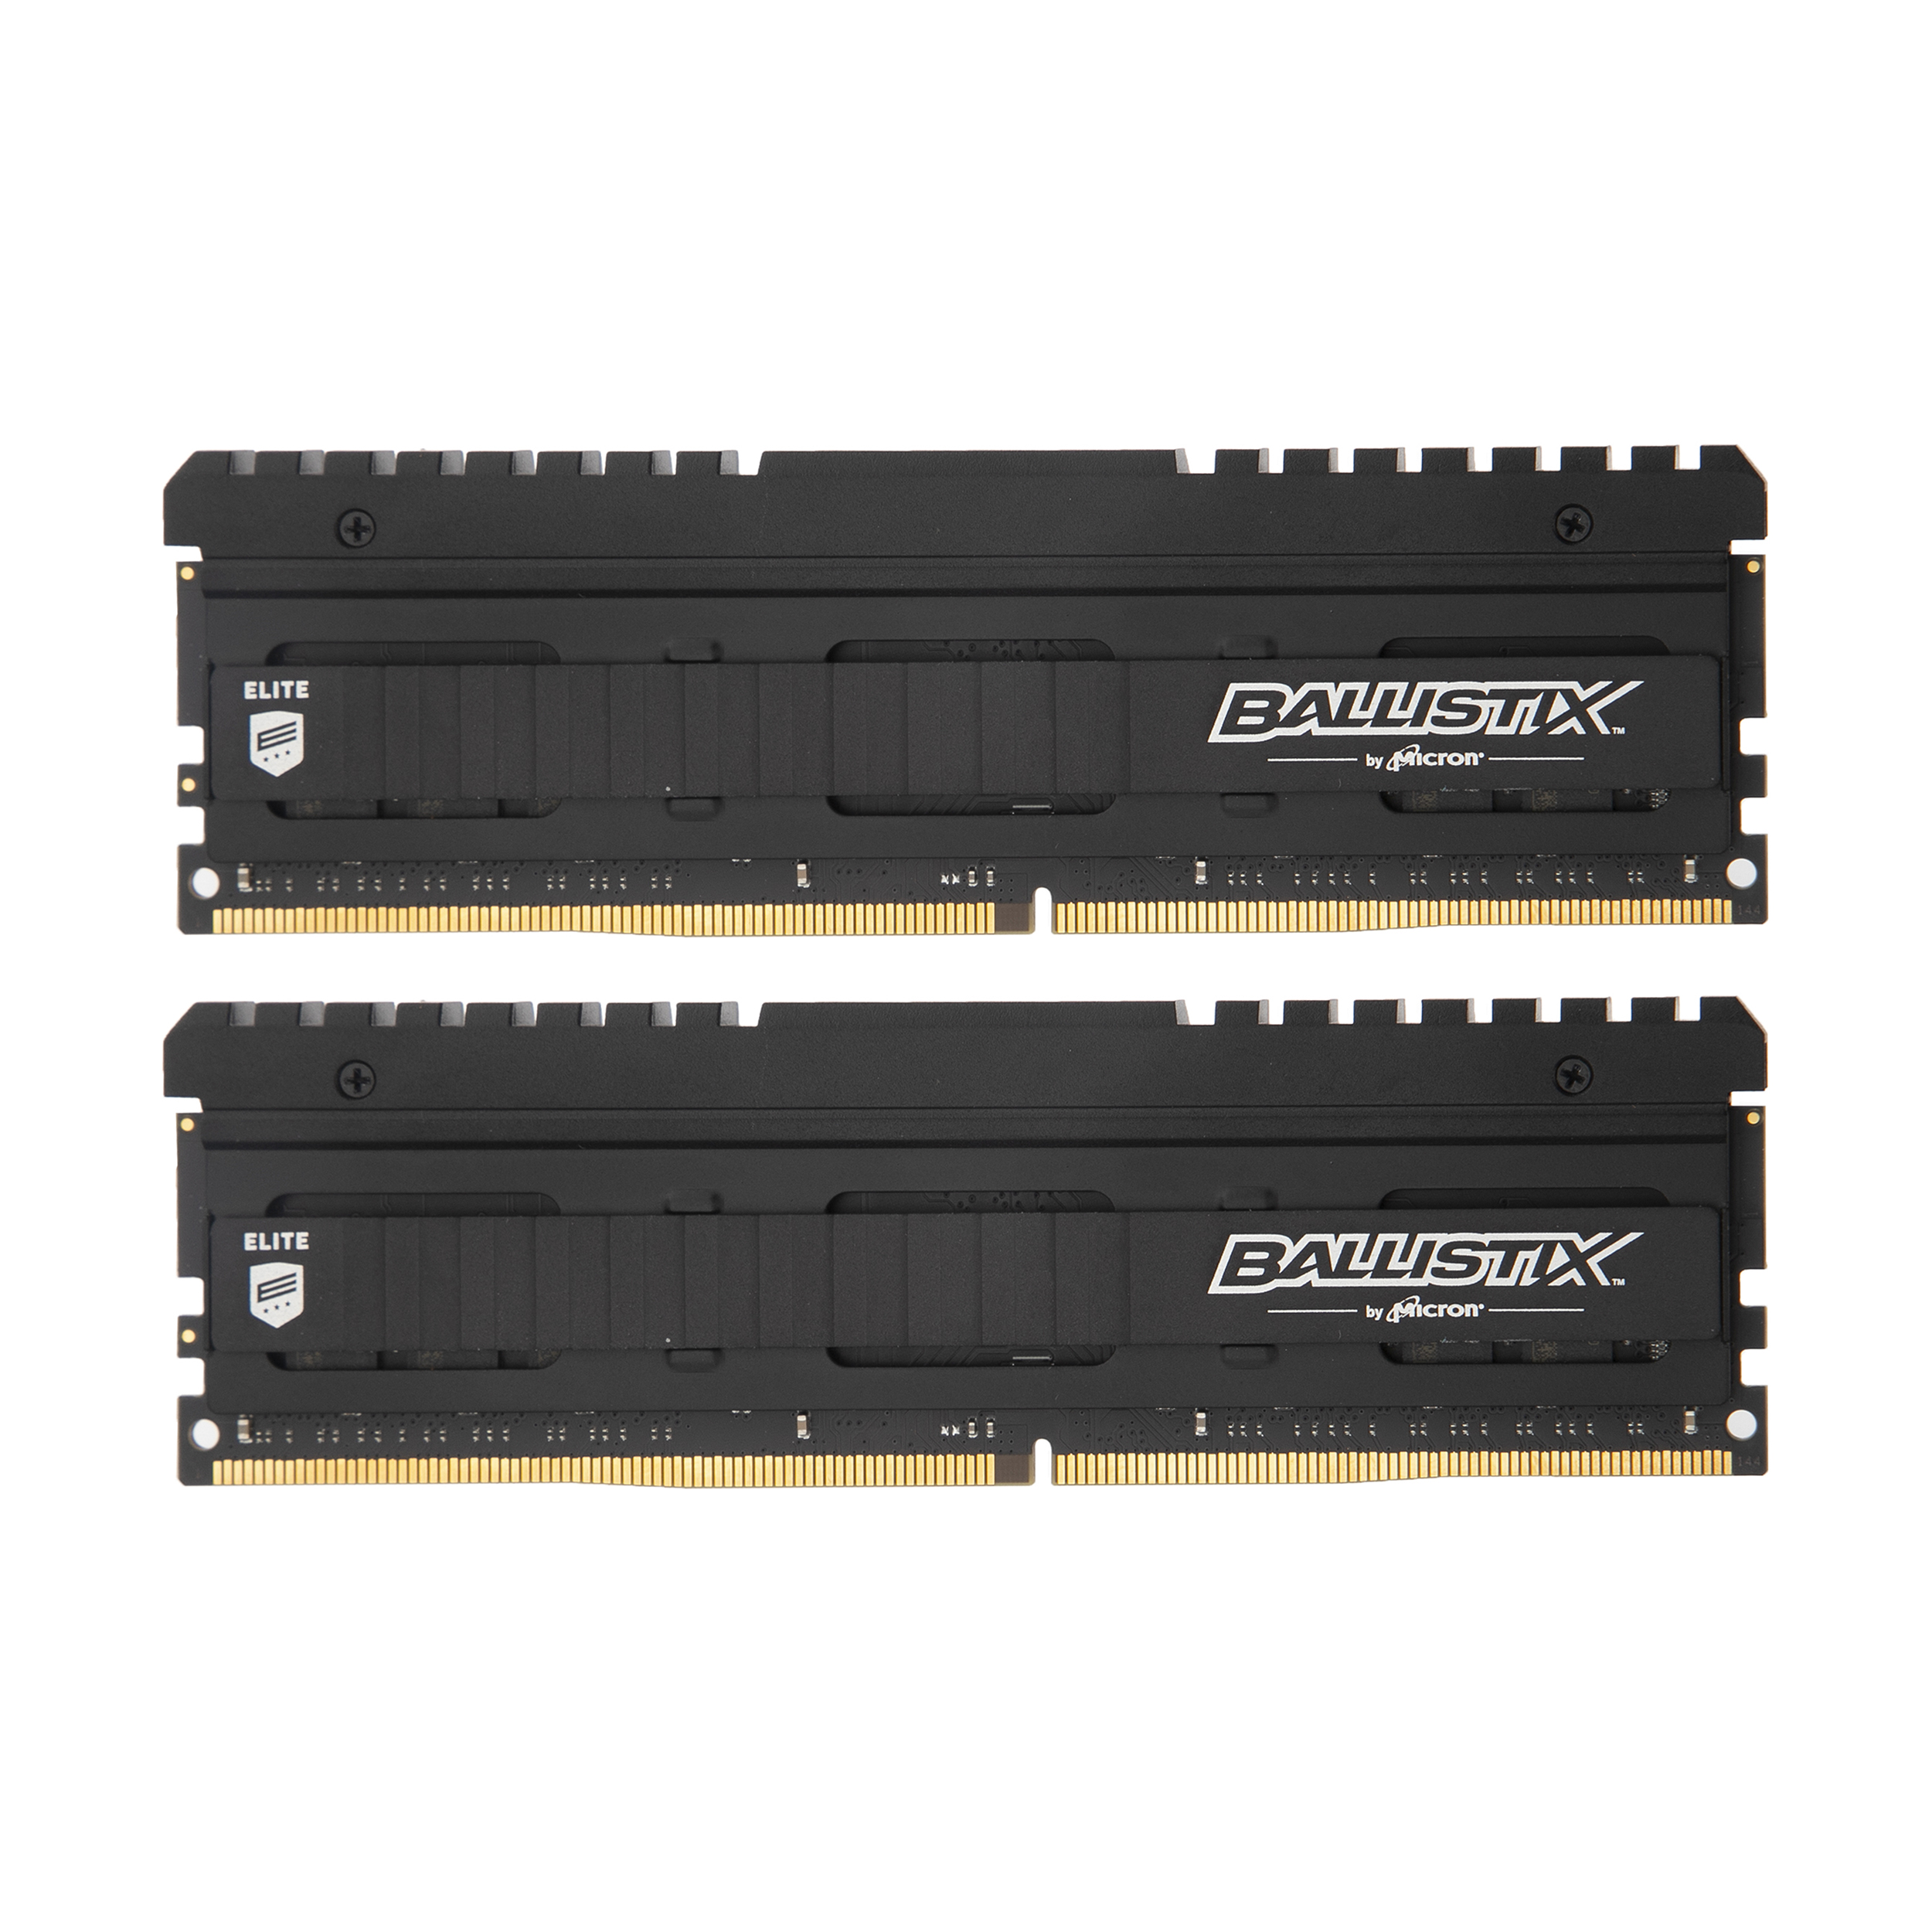 رم دسکتاپ DDR4 دو کاناله 3000 مگاهرتز CL15 میکرون مدل Ballistix Elite ظرفیت 32 گیگابایت